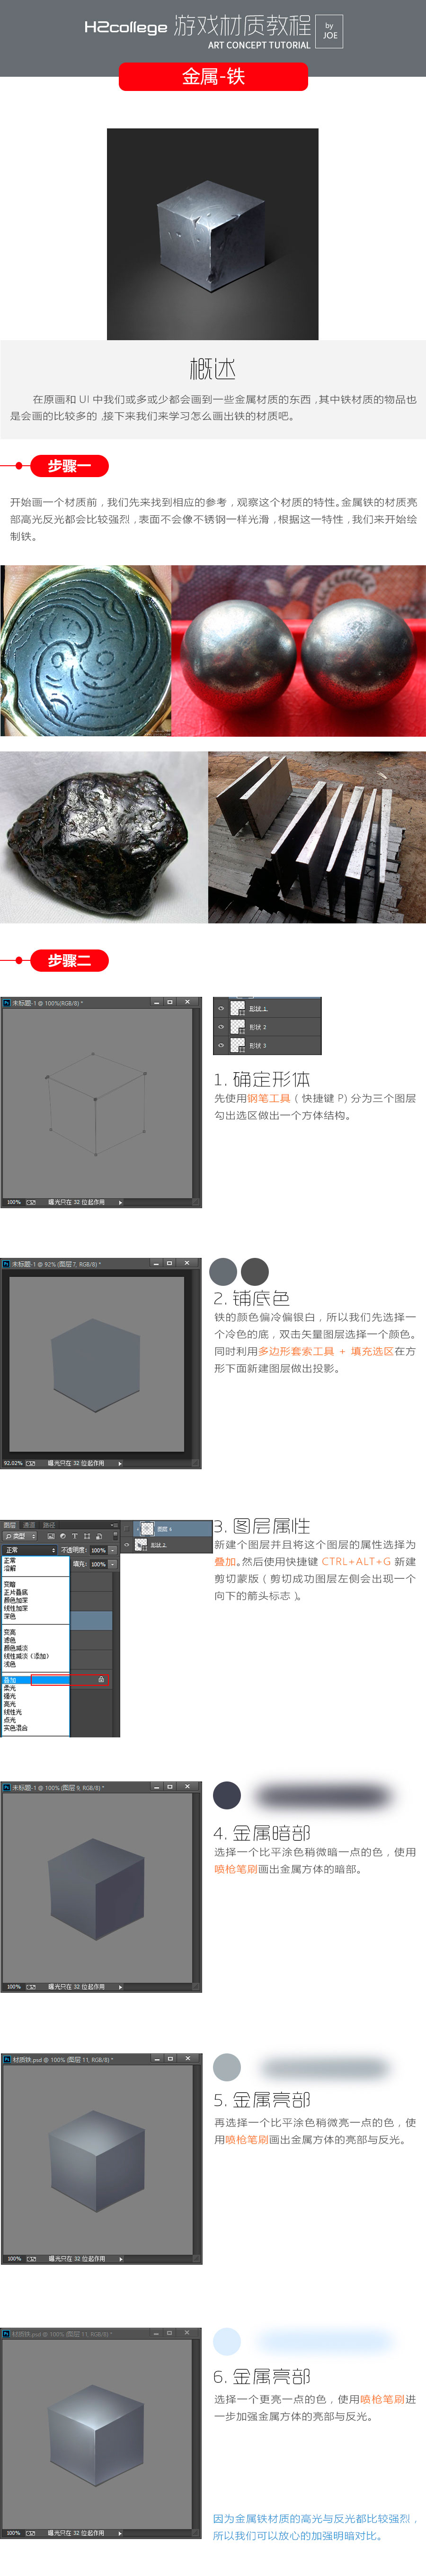 绘制铁块：用PS制作金属材质的铁块,PS教程,素材中国网